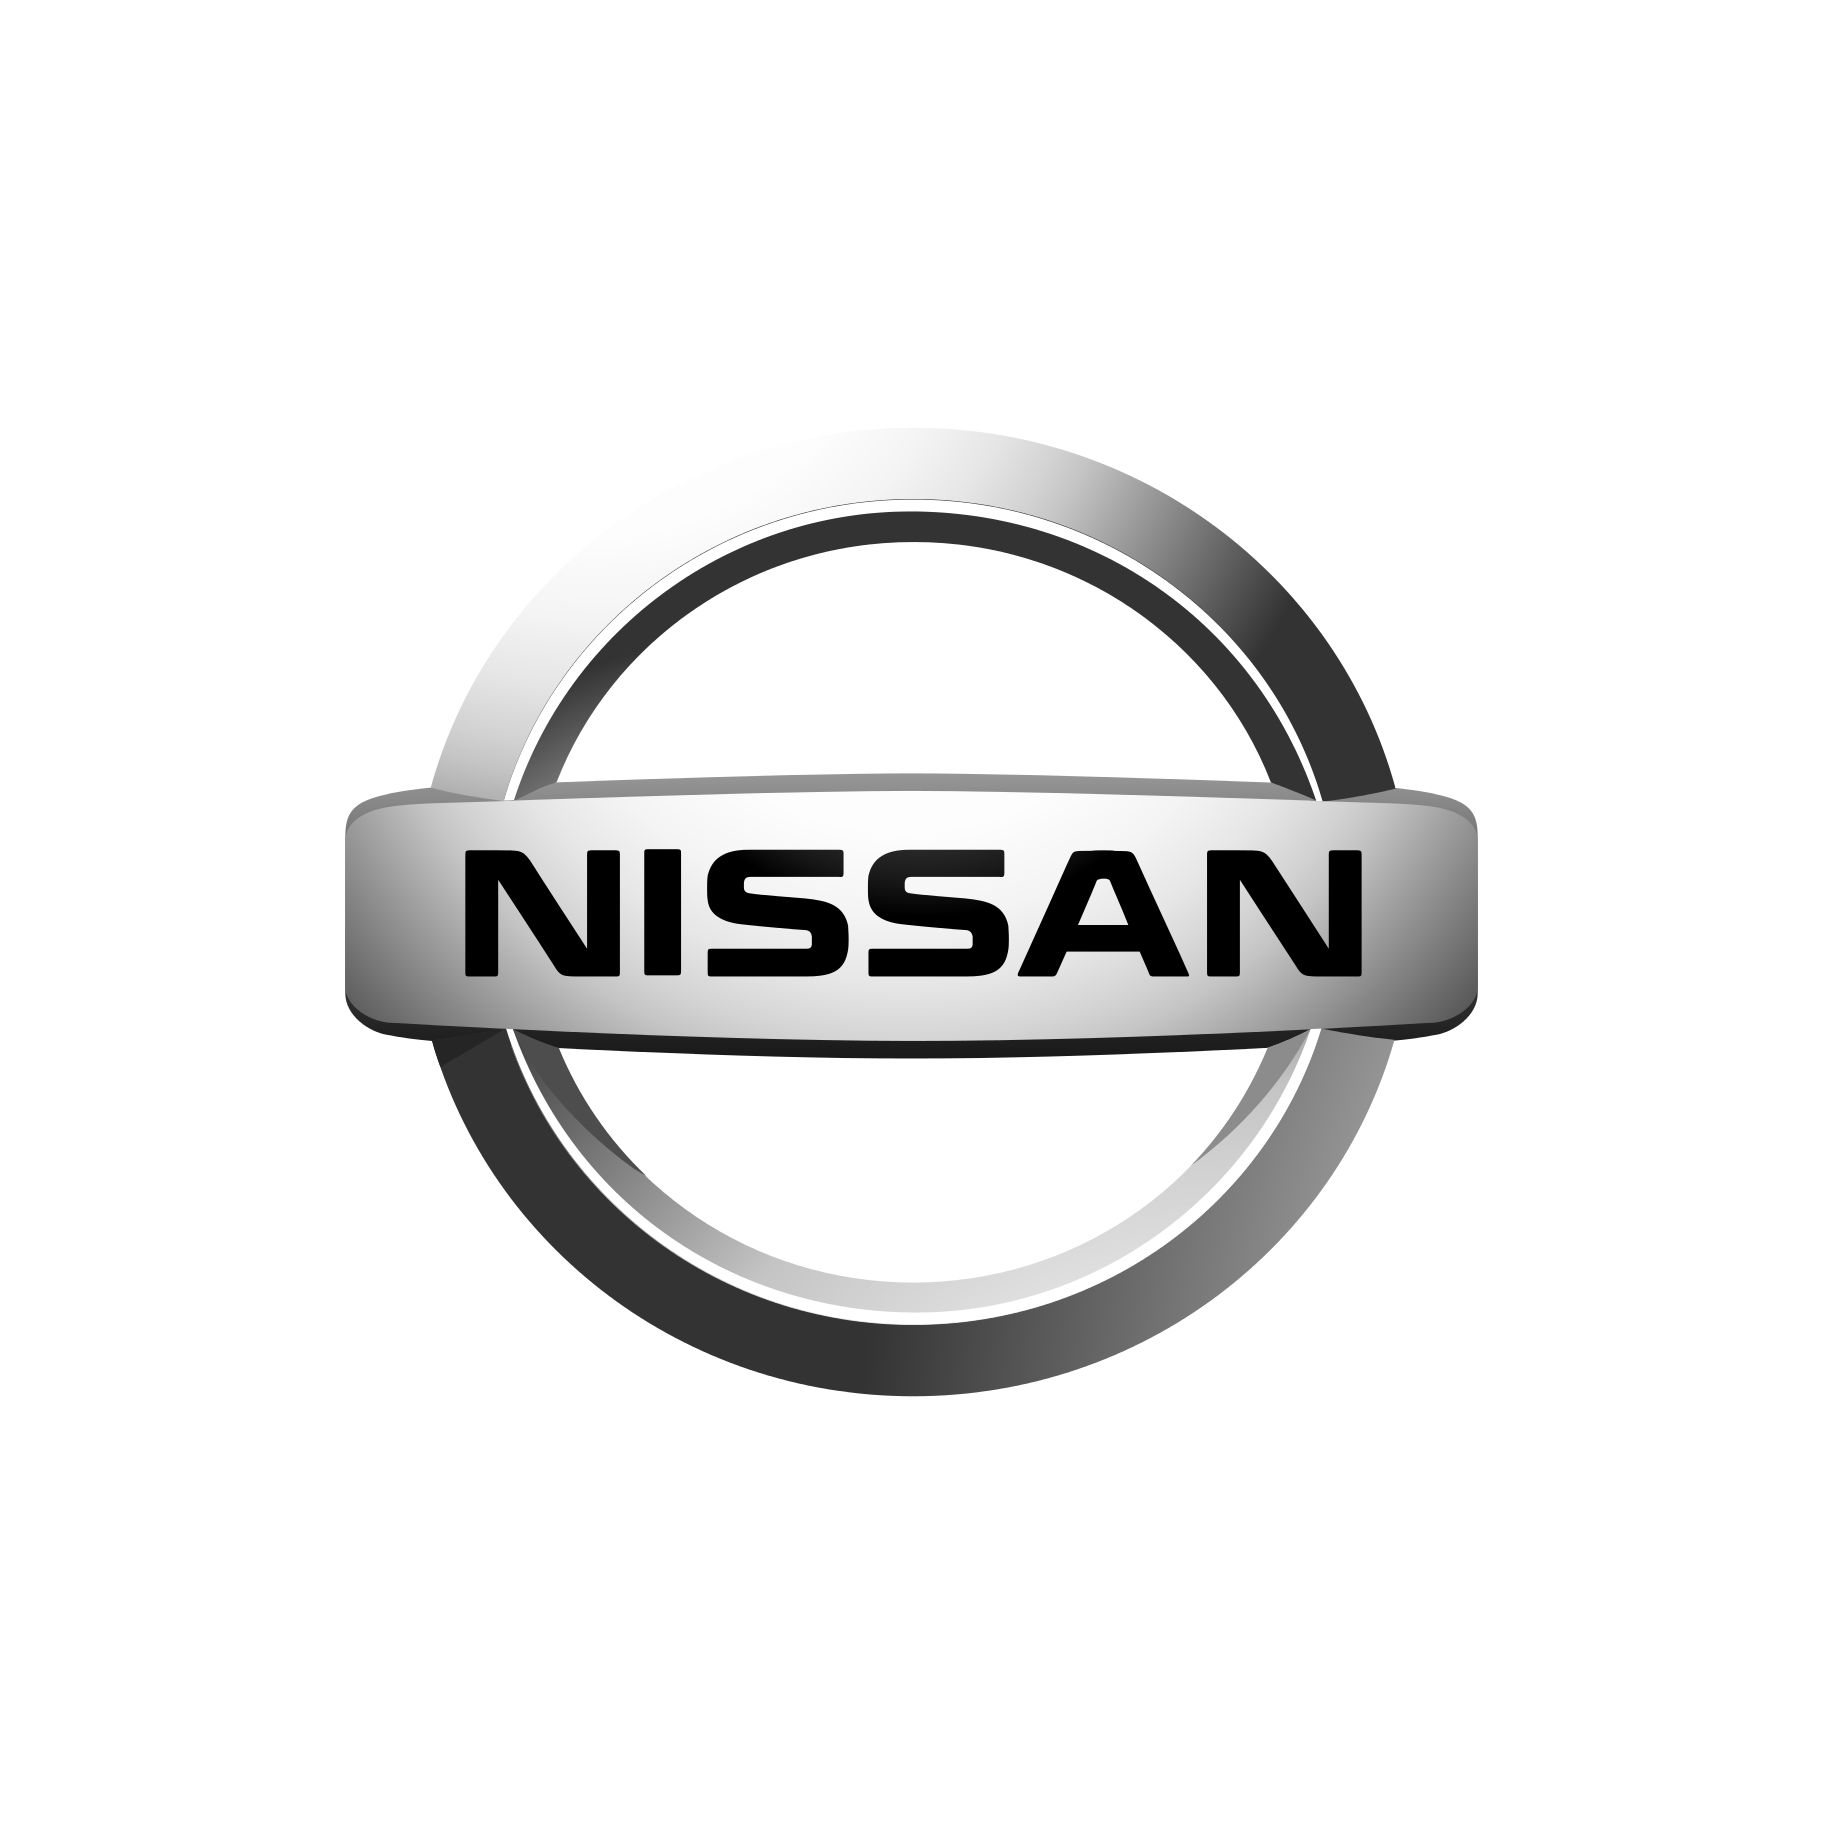 Nissan - sprrawdź wszystkie promocje